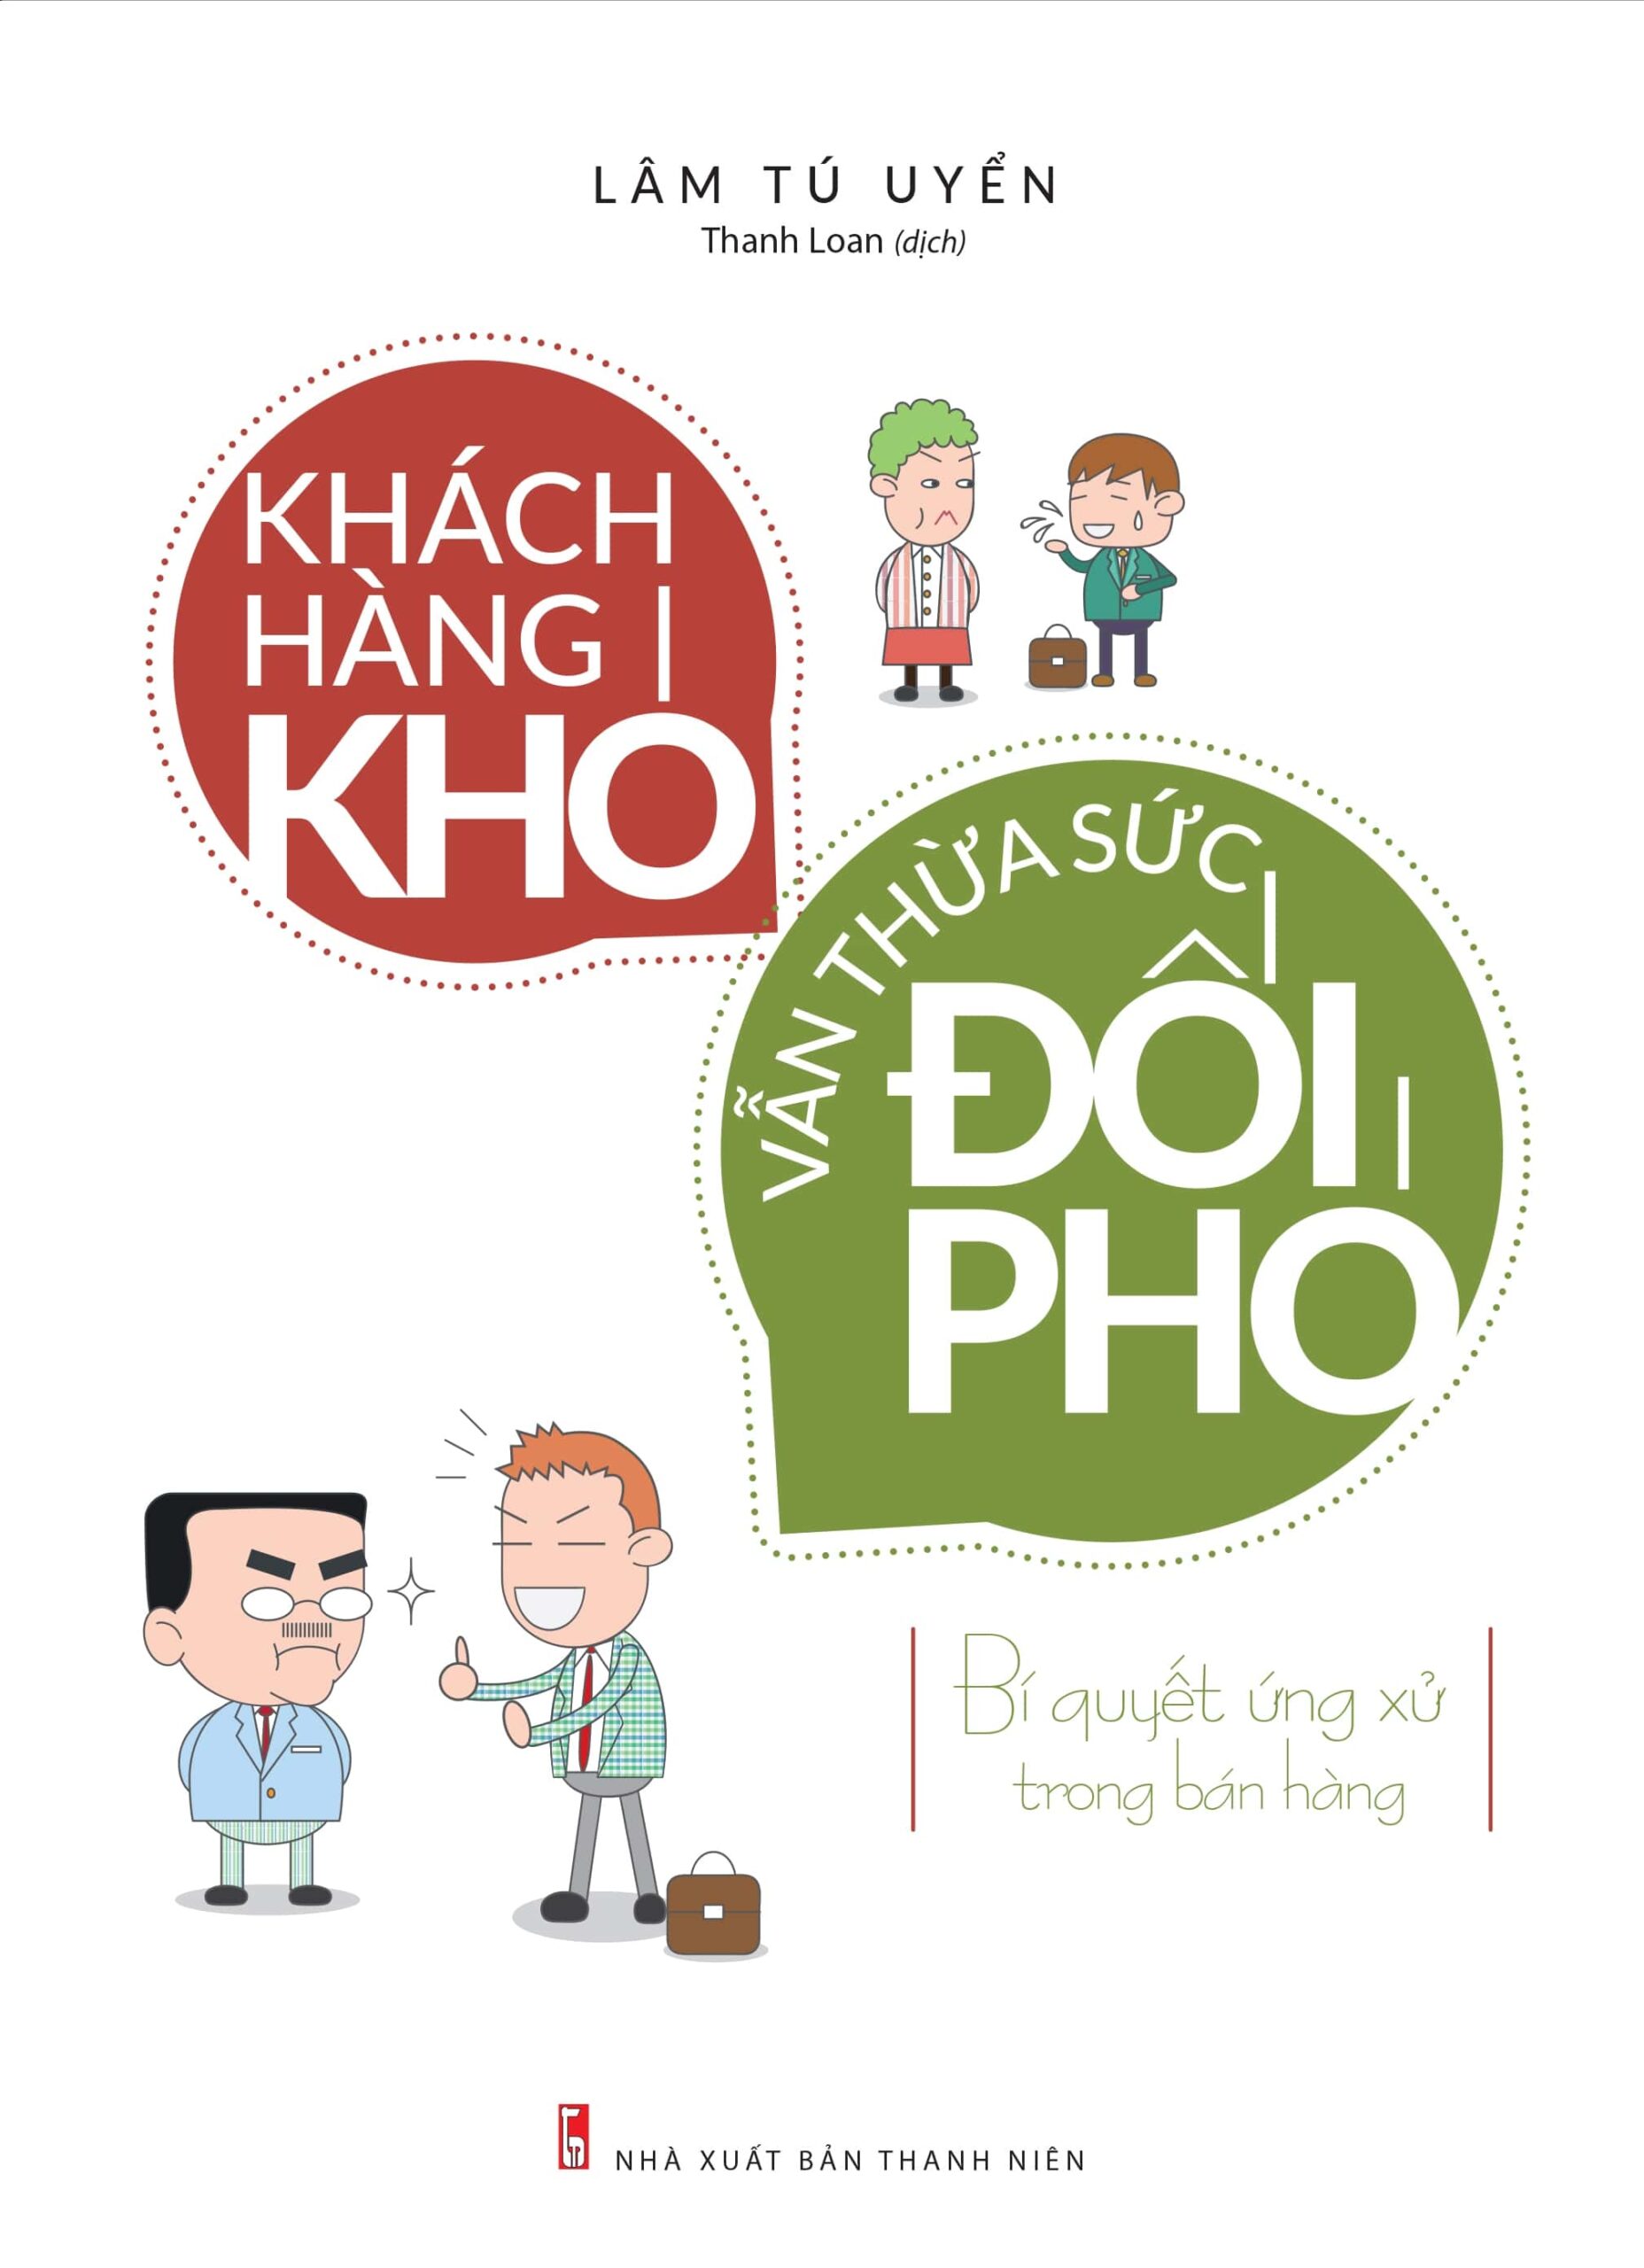 Khach Hang Kho Van Thua Suc Doi Pho Min